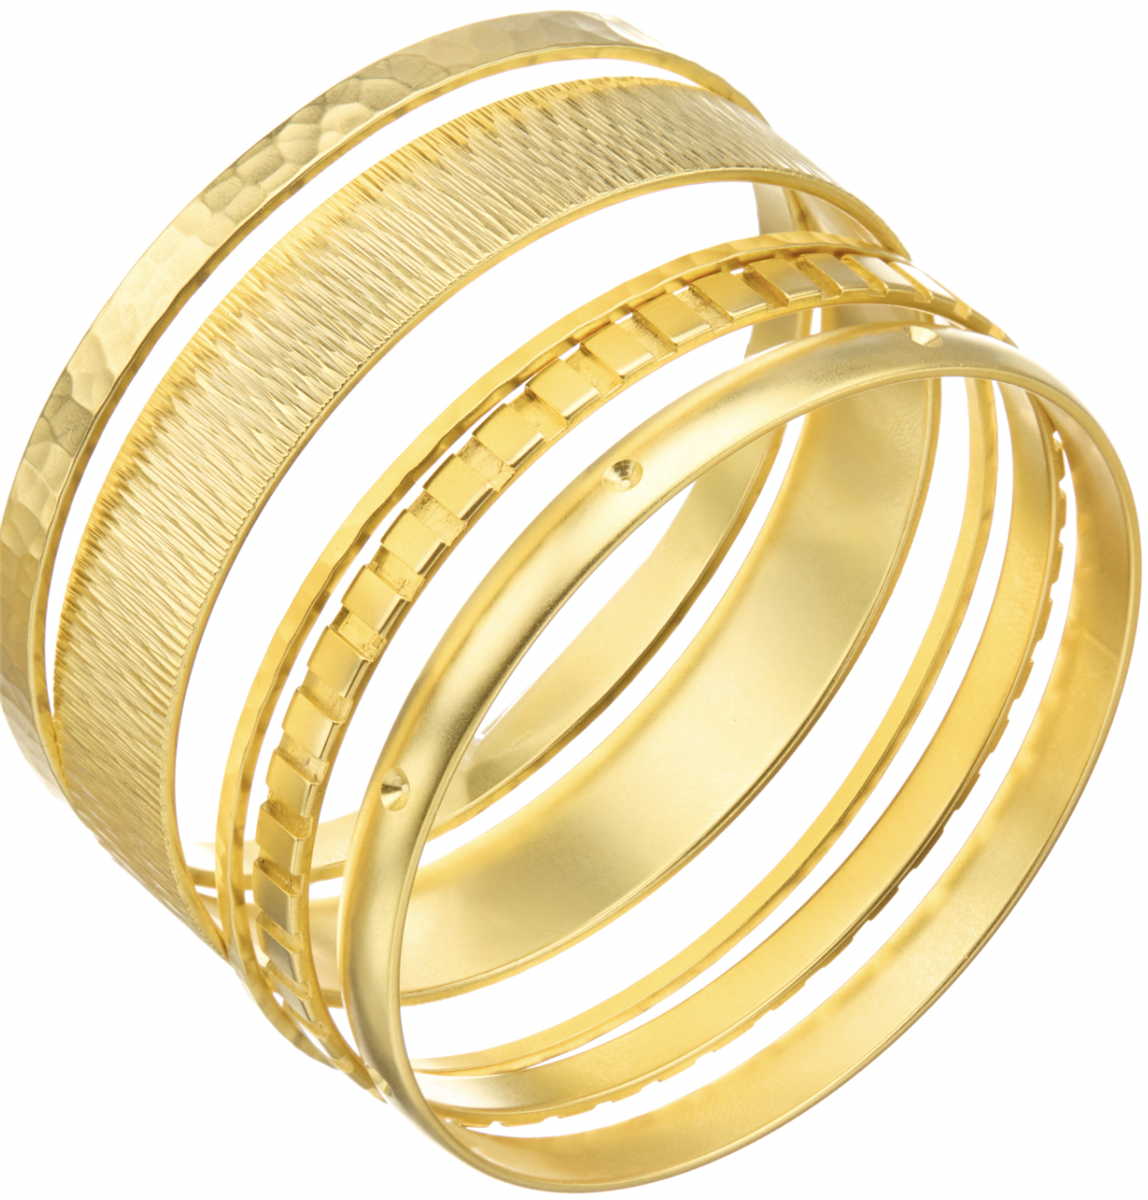 4 Indian Bangles Set, 22k Gold Plated, 4 Bangles Set, Traditional Indian,  Wedding Bangles, Bracelet Set, Kadas, Mix N Match - Etsy | Gold bangles  design, Solid gold bangle, Gold bangles for women